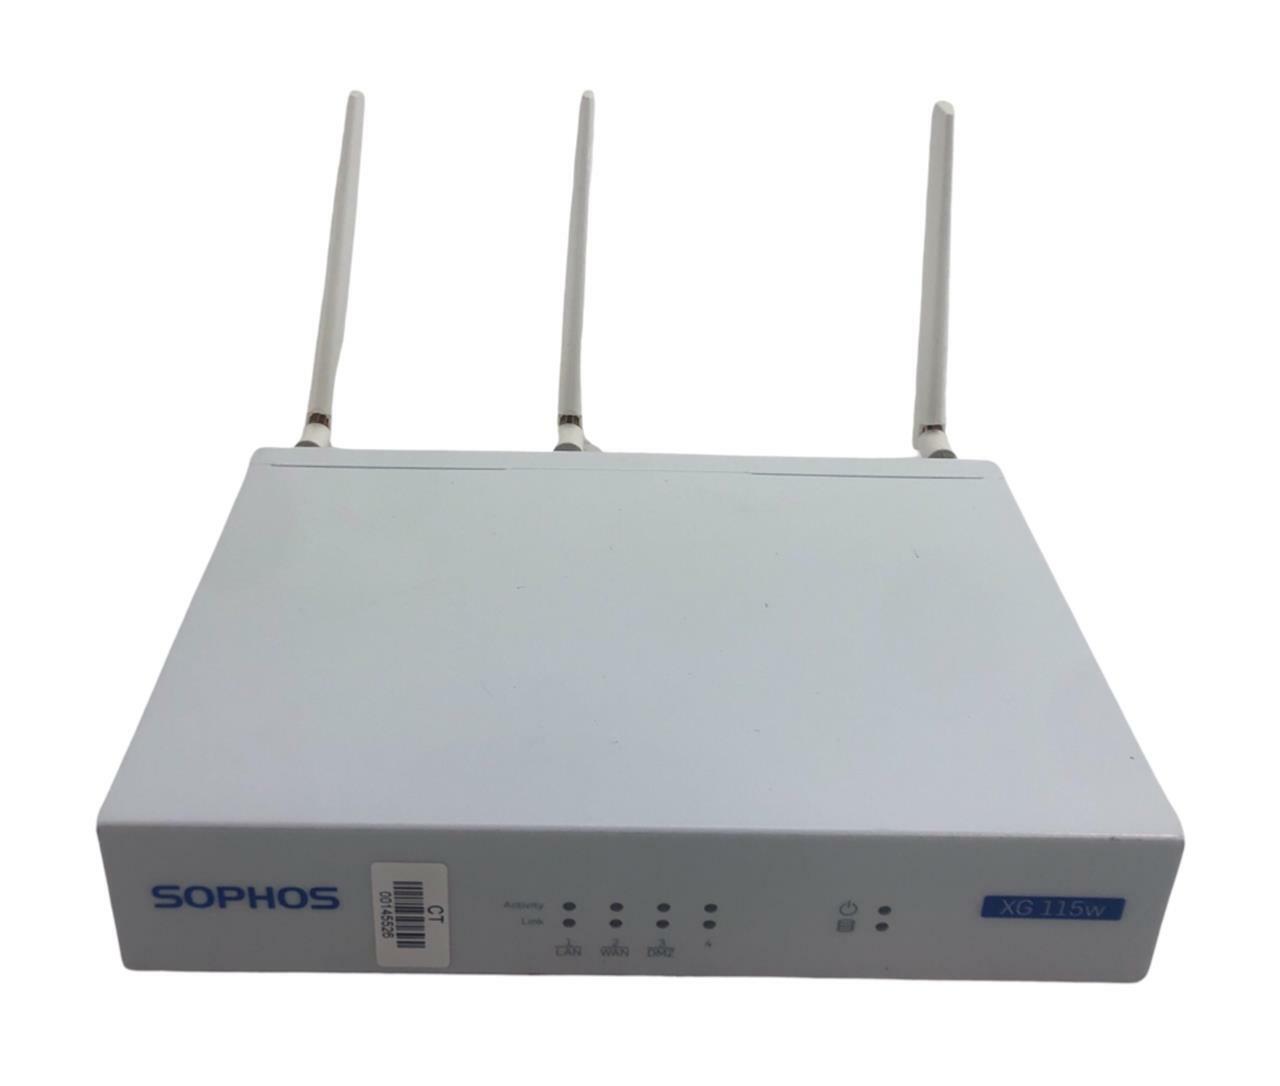 Sophos XG 115w Firewall Desktop Network Security Appliance w/ AC Adapter